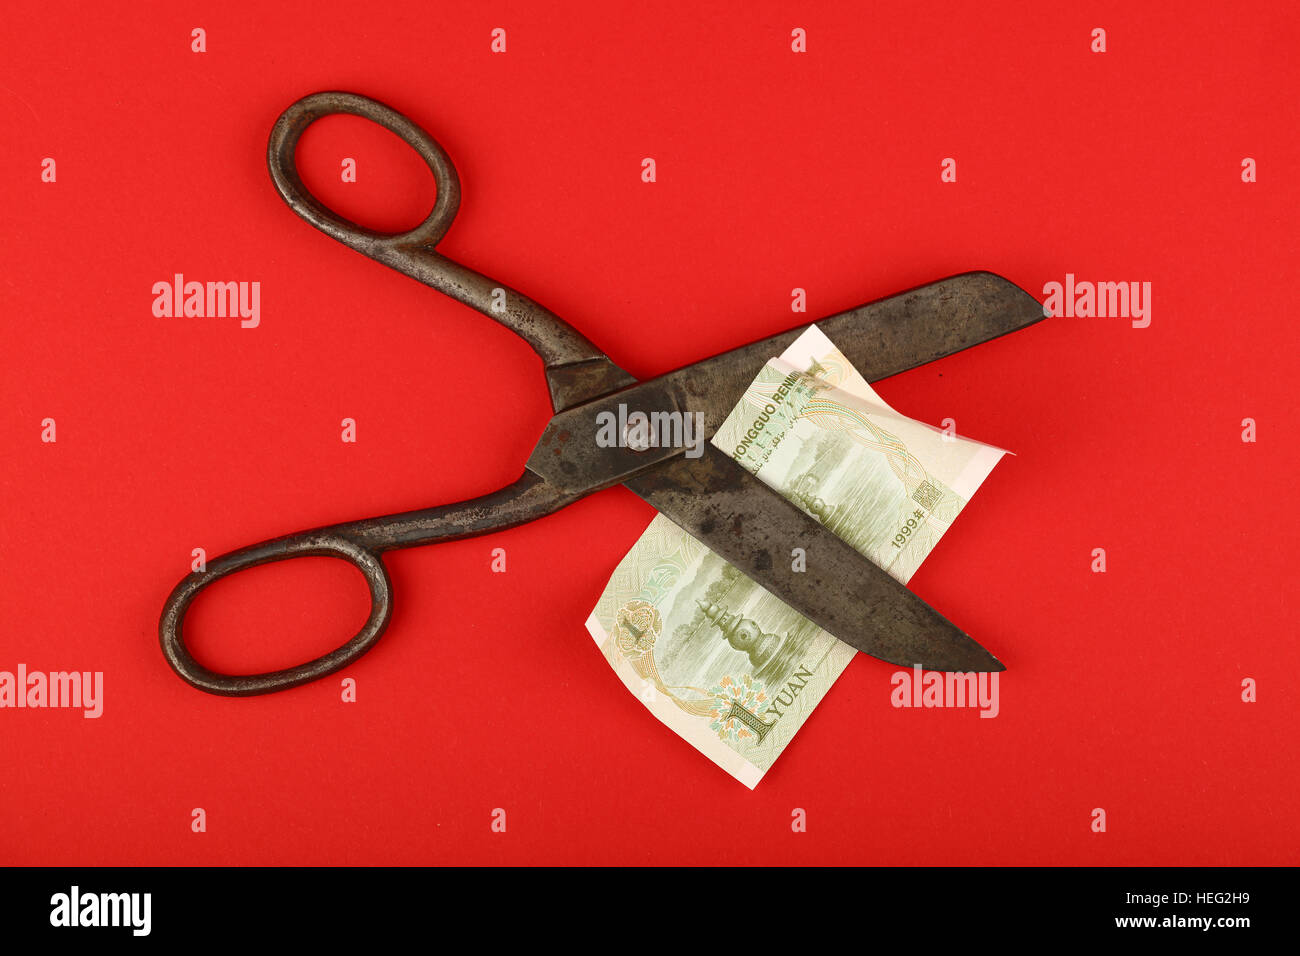 China Finanzkrise, Rückgang der chinesischen Wirtschaft und Yuan Wechselkurs illustrierte, alte Vintage Schere schneiden einer Yuan-Banknote auf rotem Grund Stockfoto